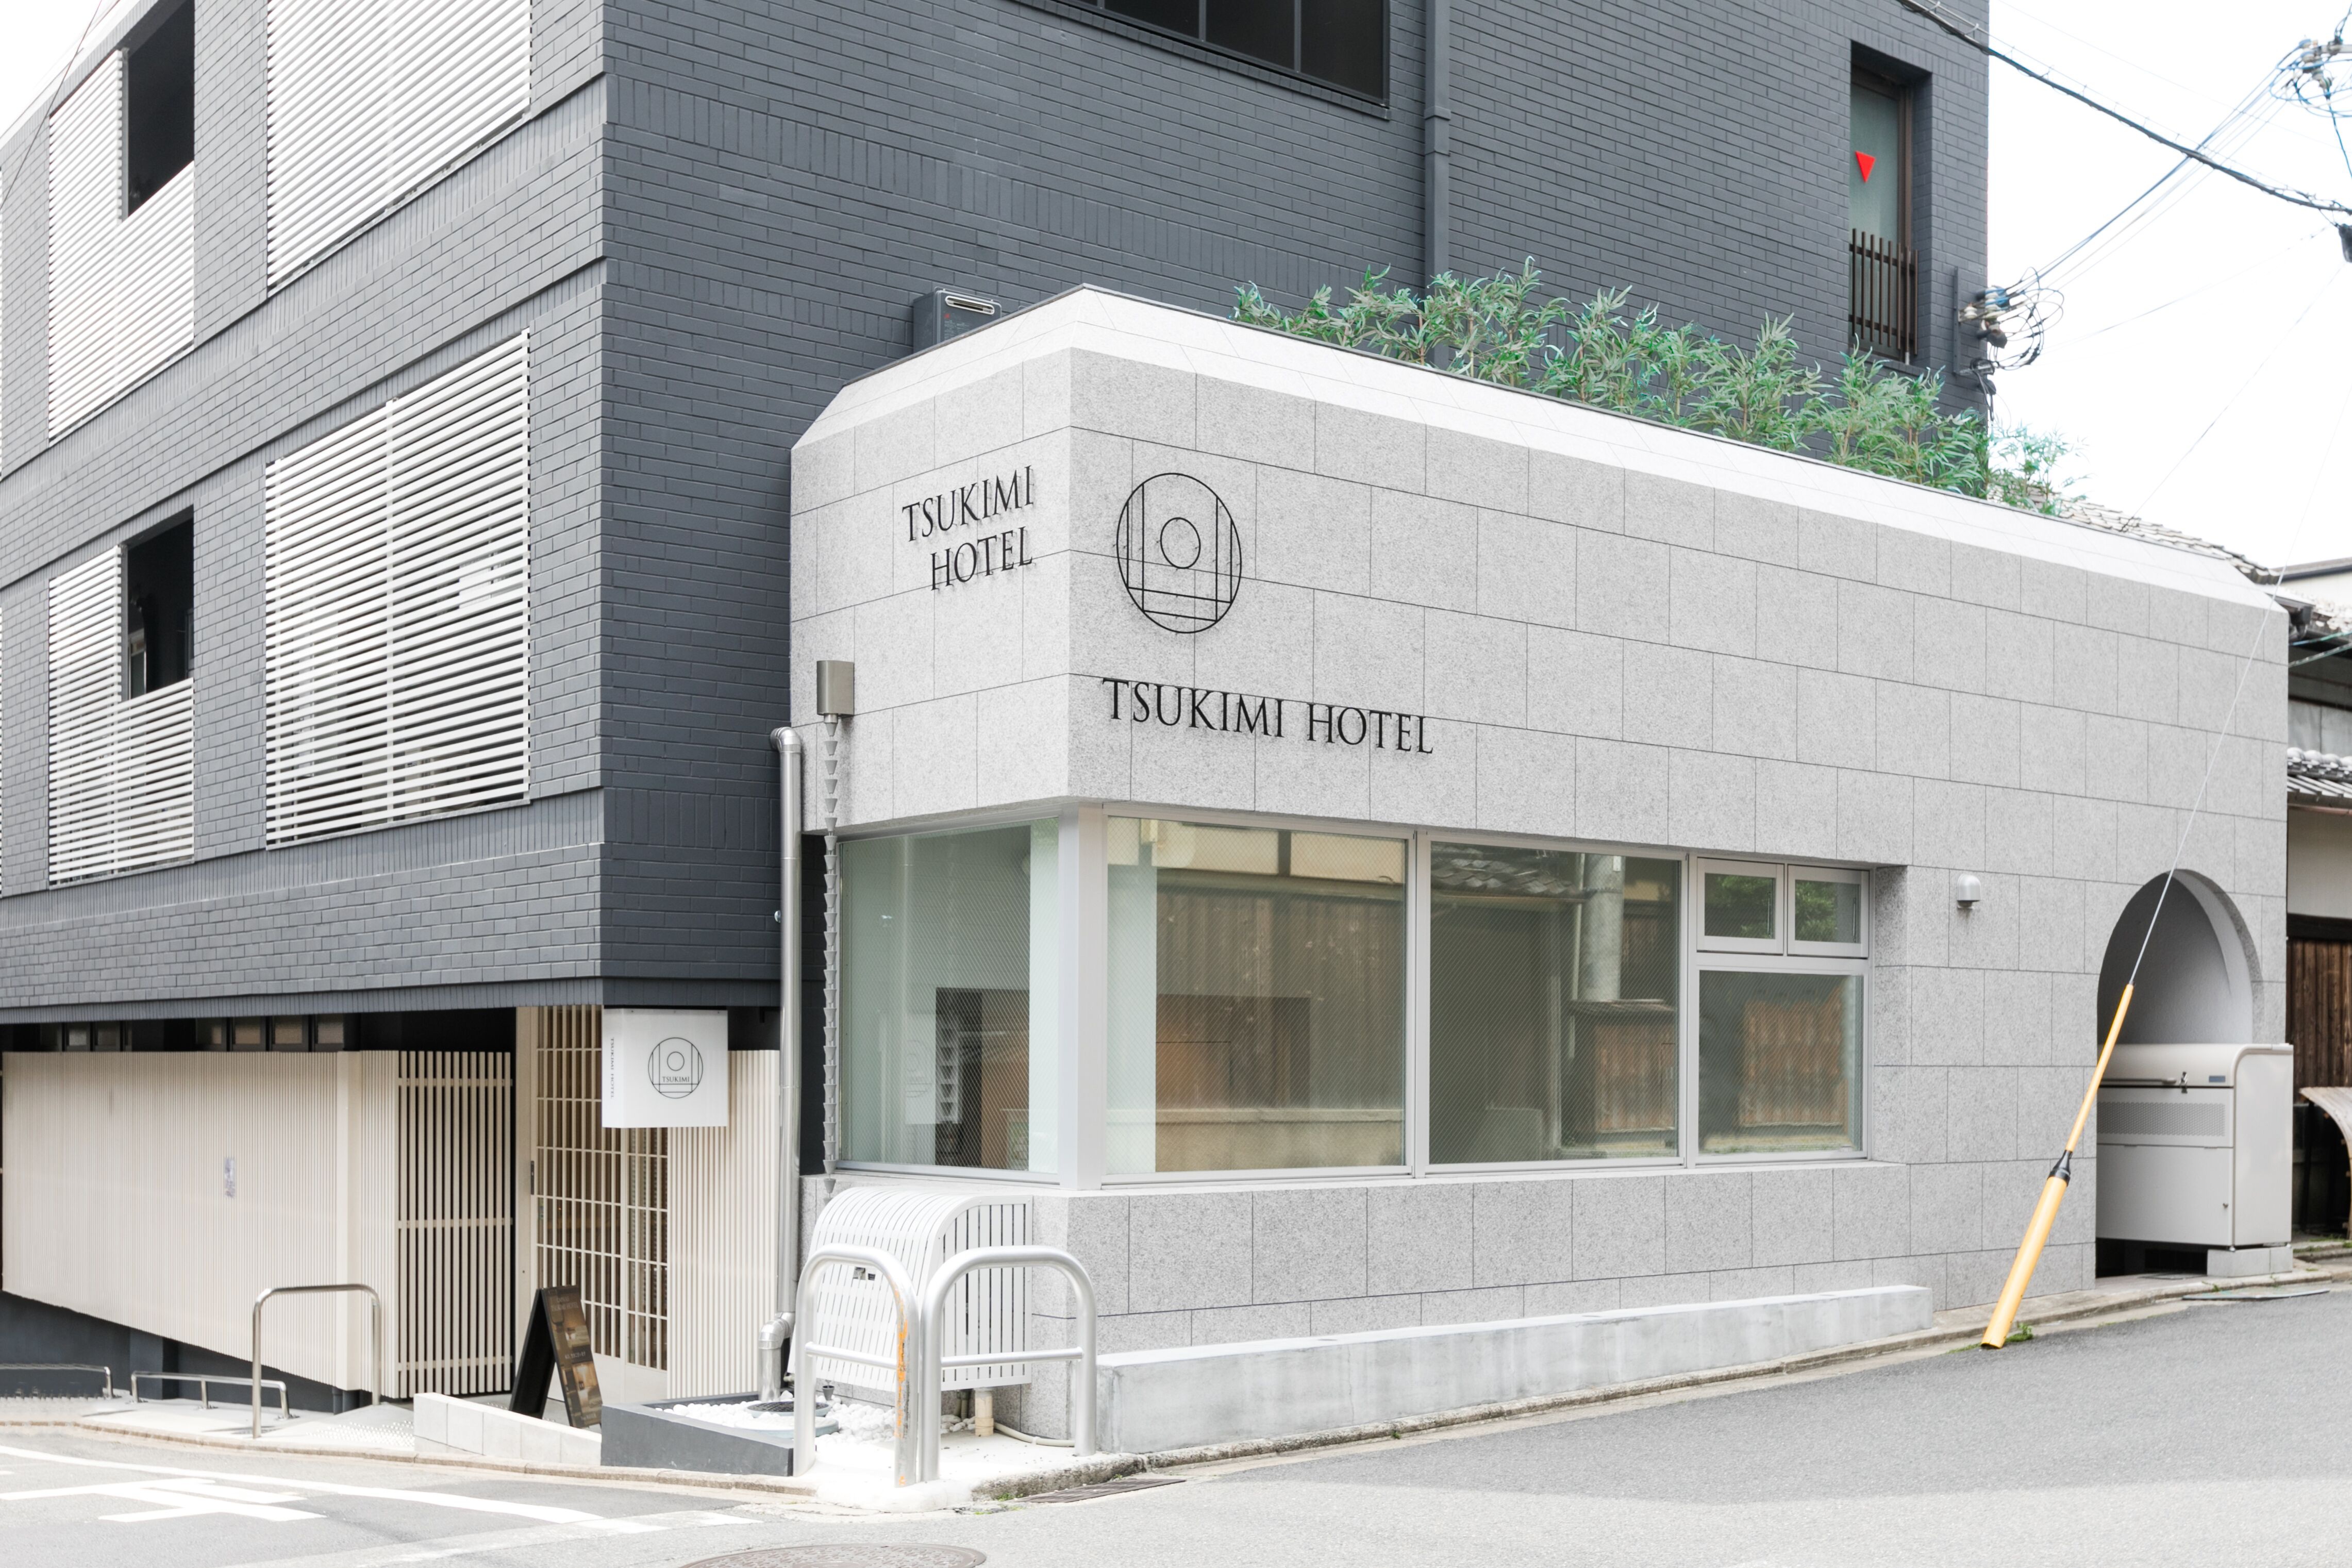 TSUKIMI HOTEL